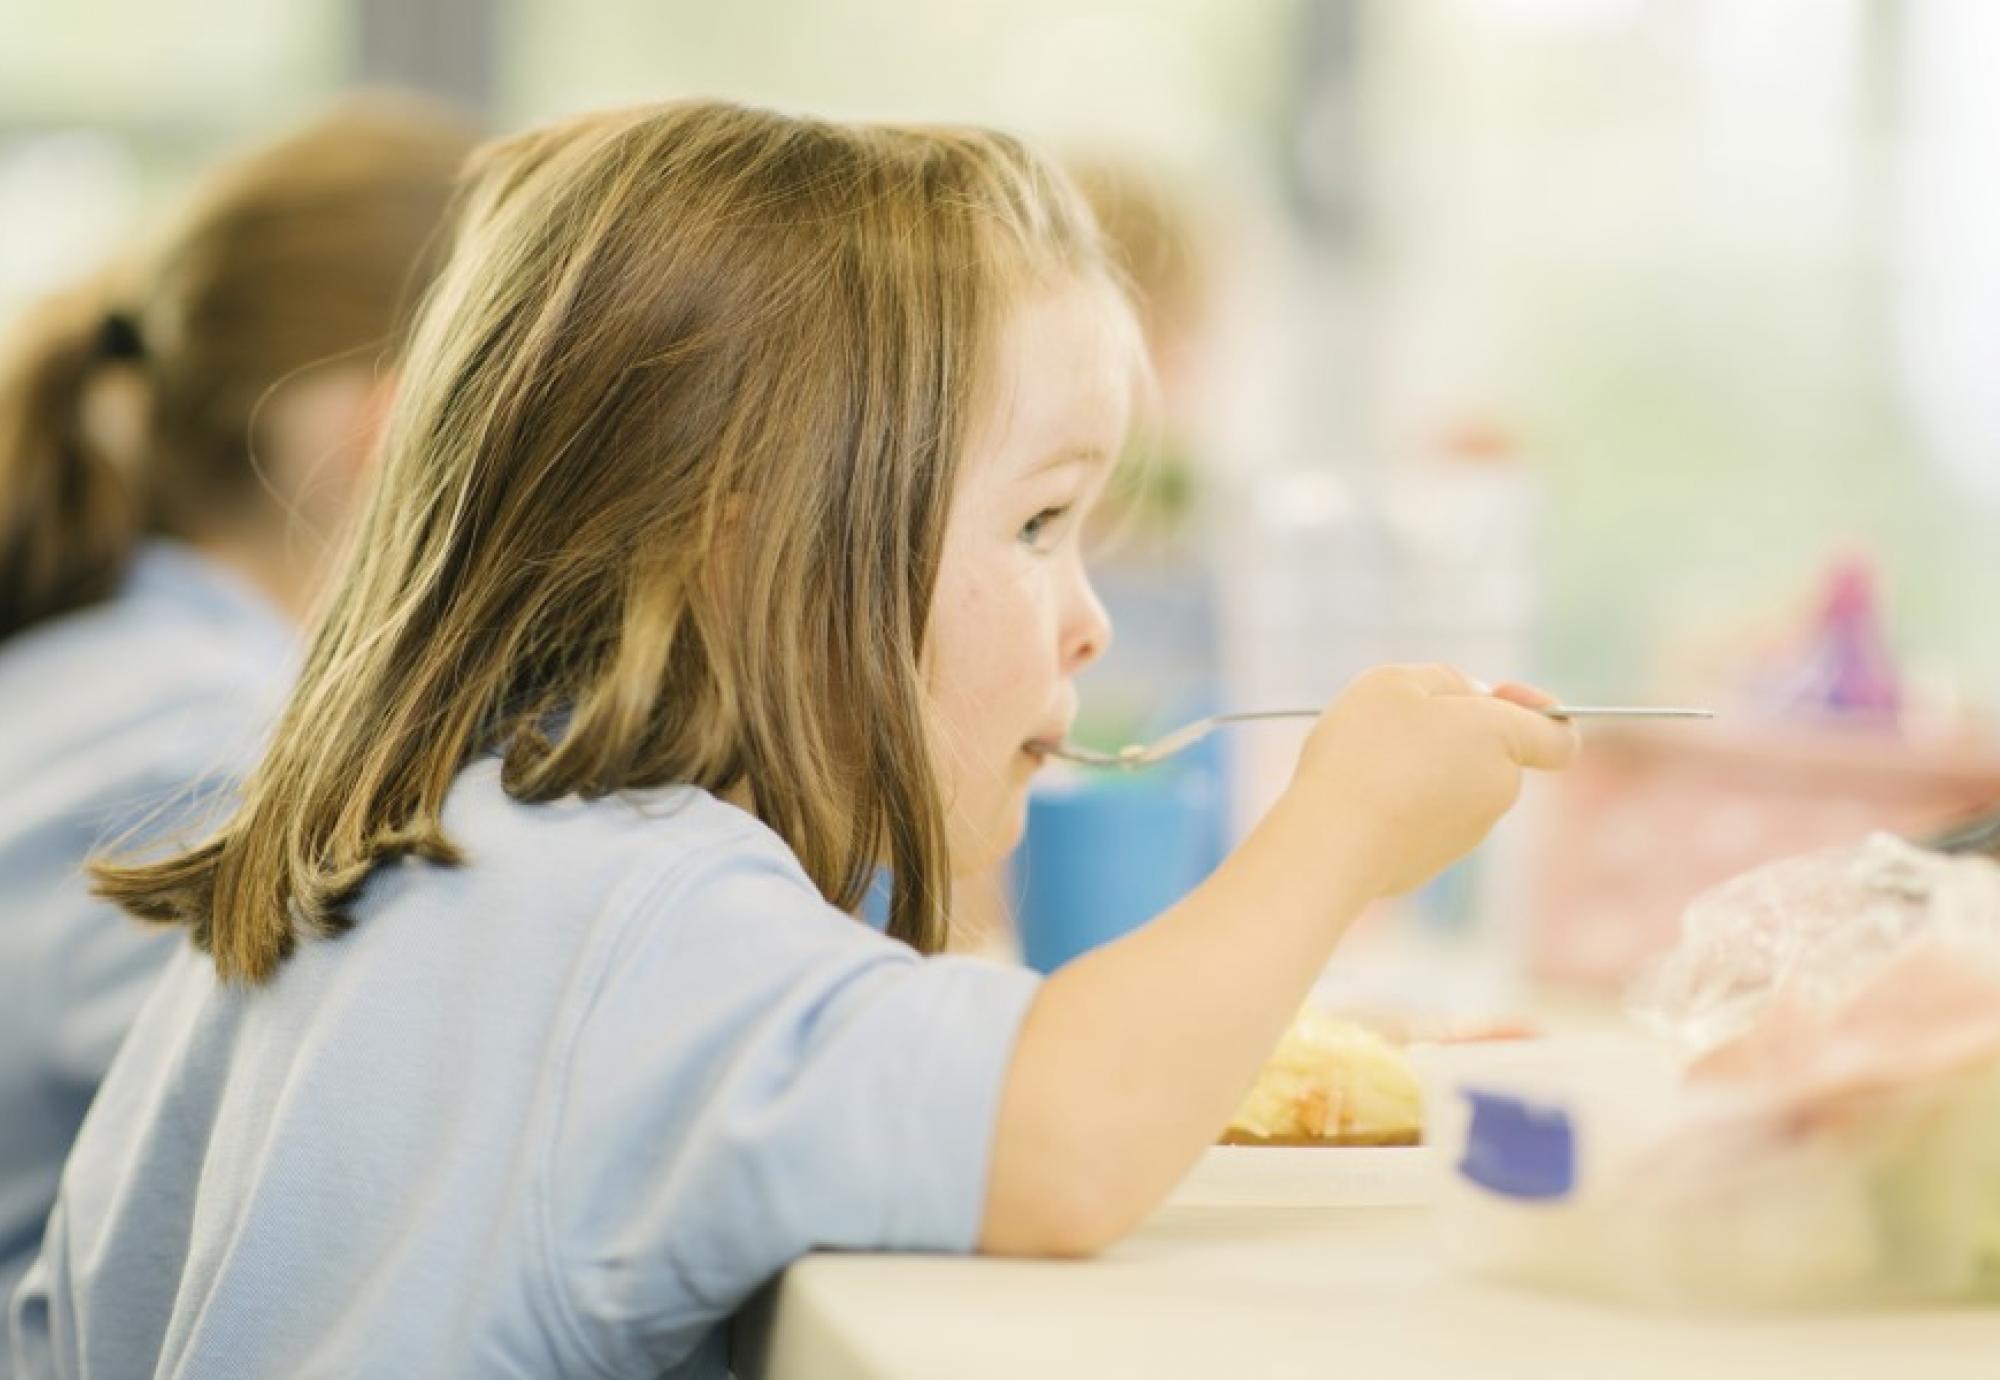 Child eating school dinner 